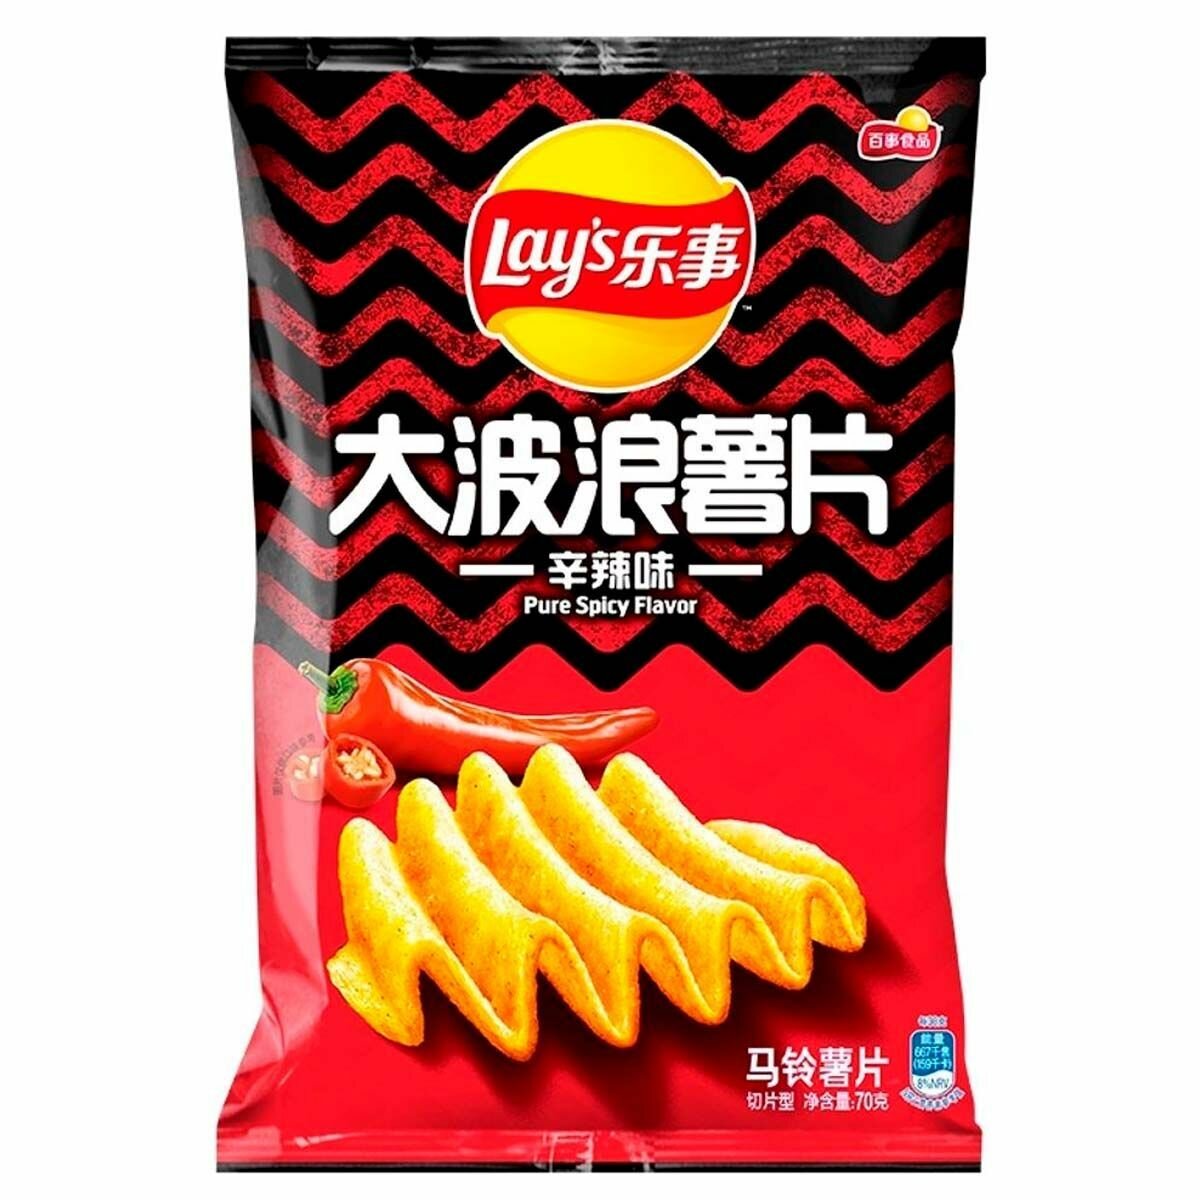 Картофельные чипсы Lay's Big Wave Pure Spicy острые со вкусом перца (Китай), 70 г